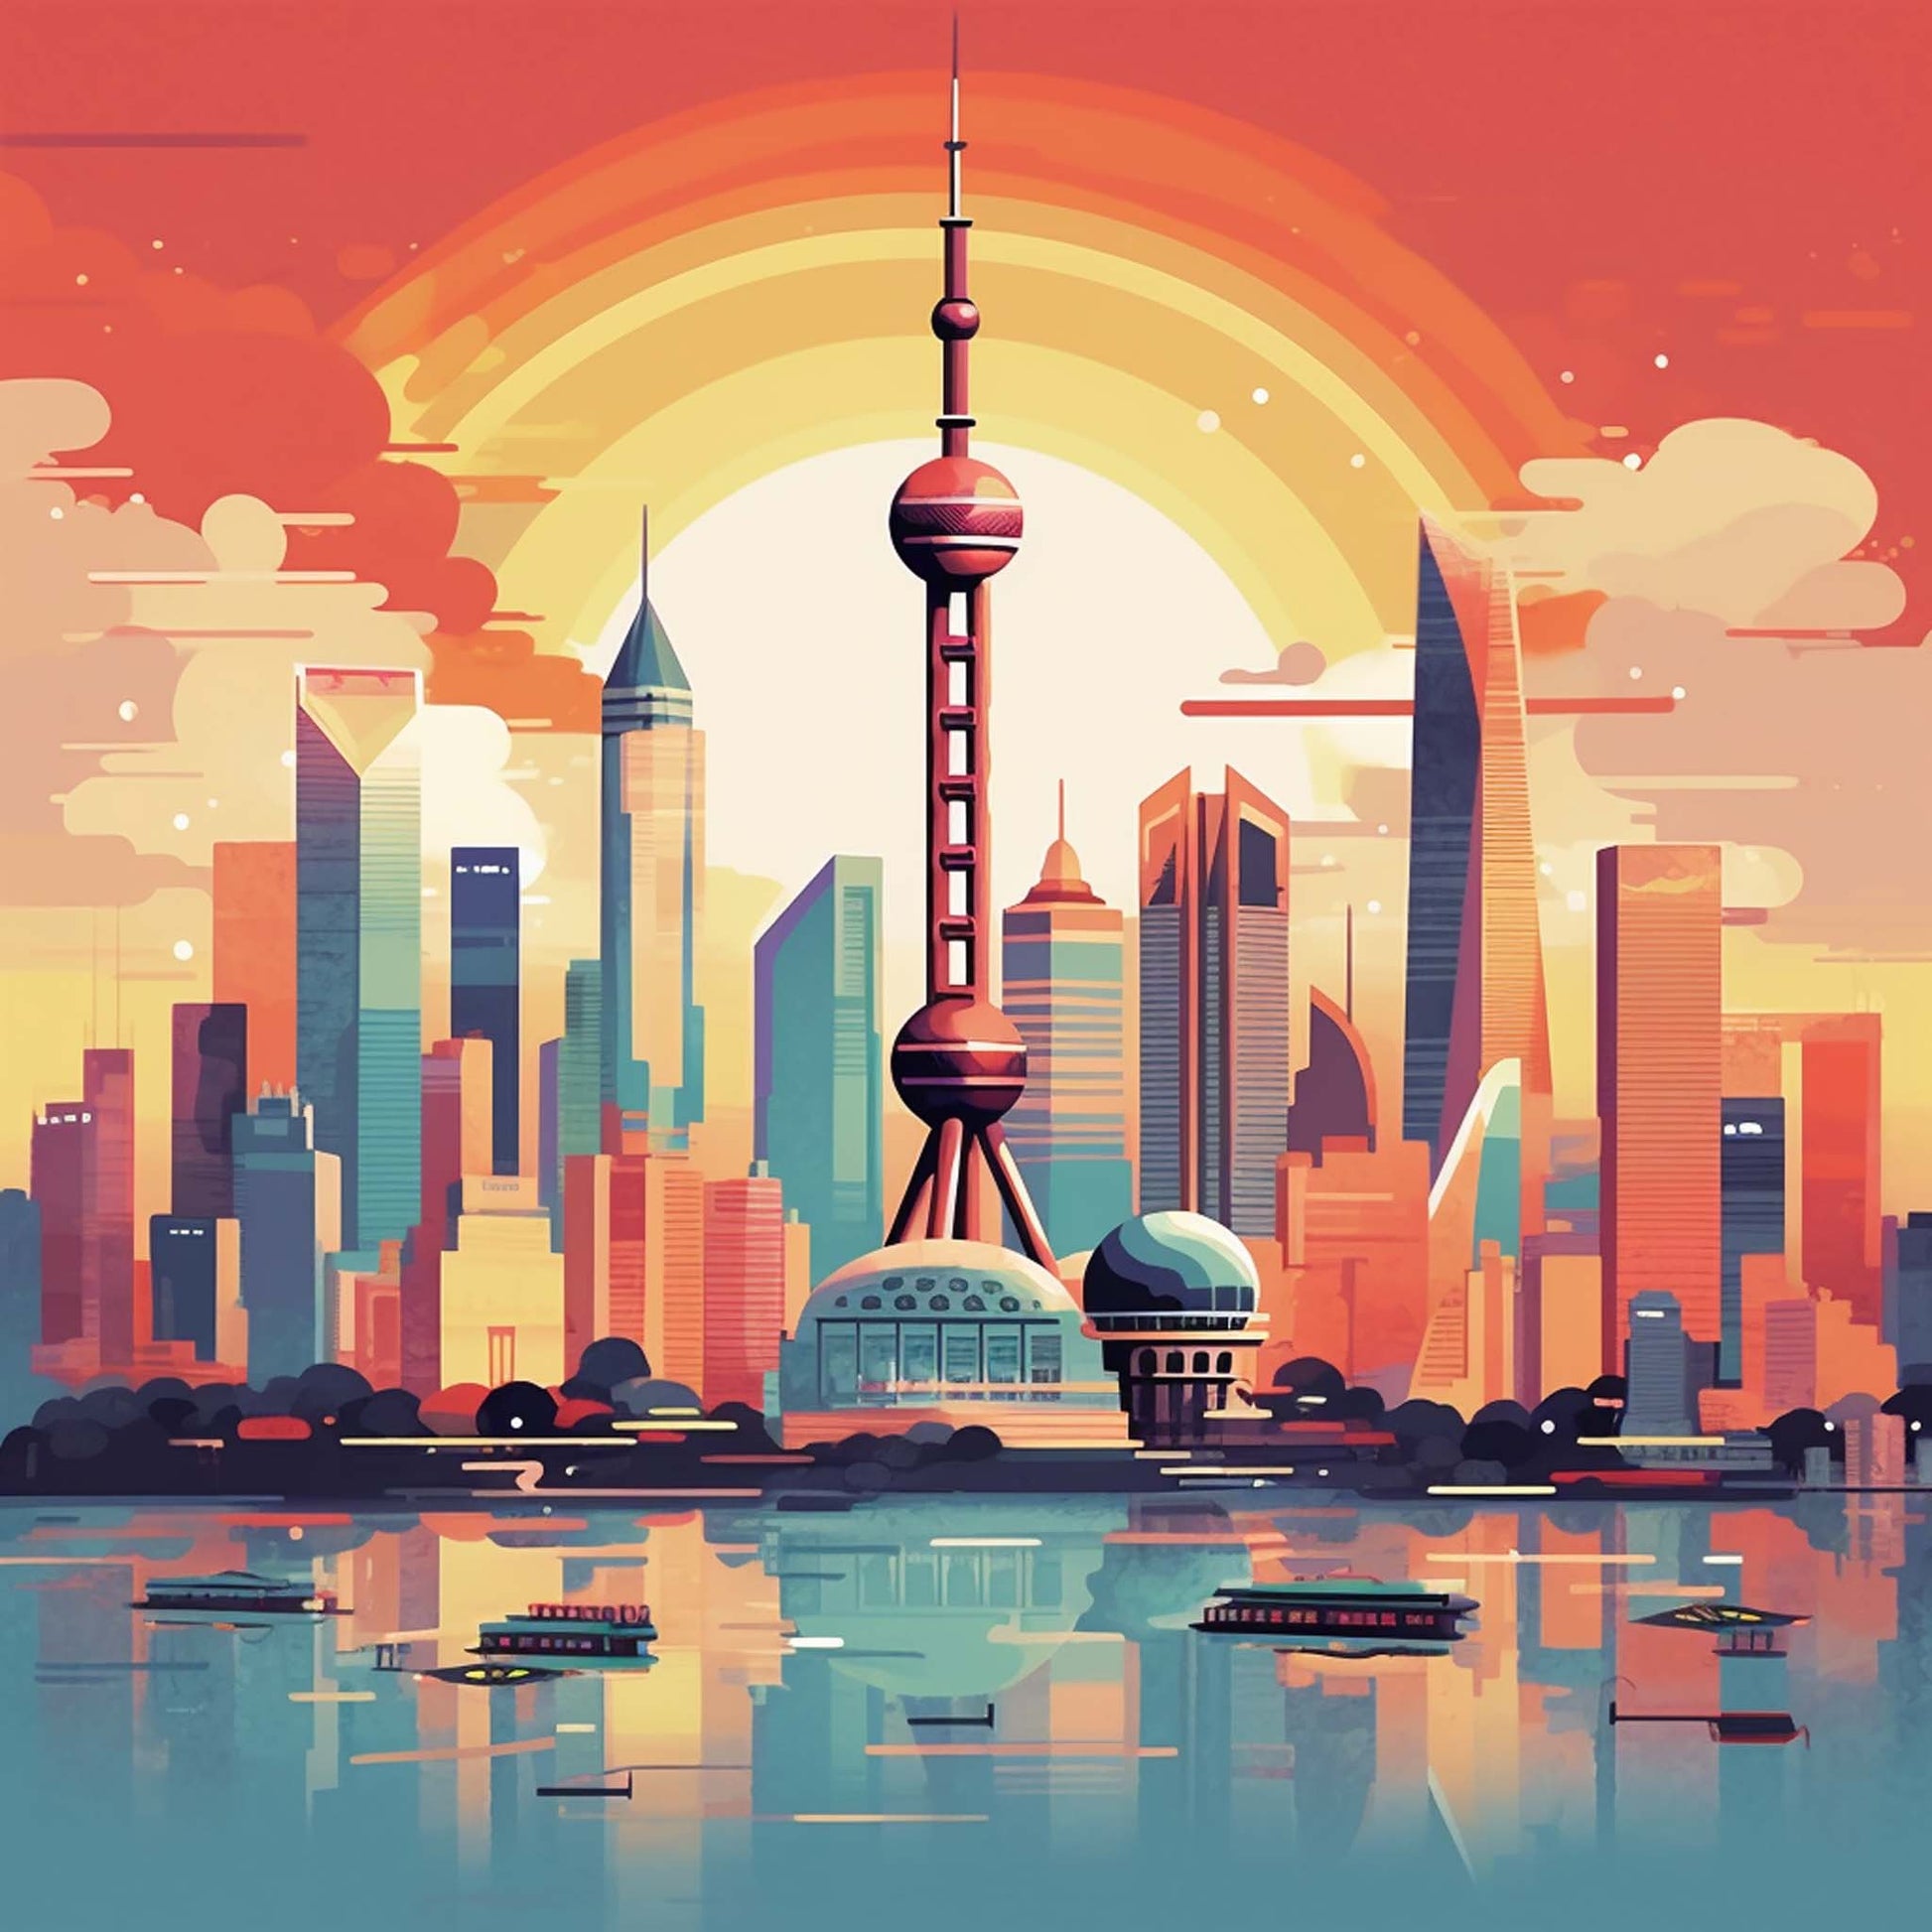 Urbanisto - Shanghai Skyline - Wandbild in der Stilrichtung des Minimalismus